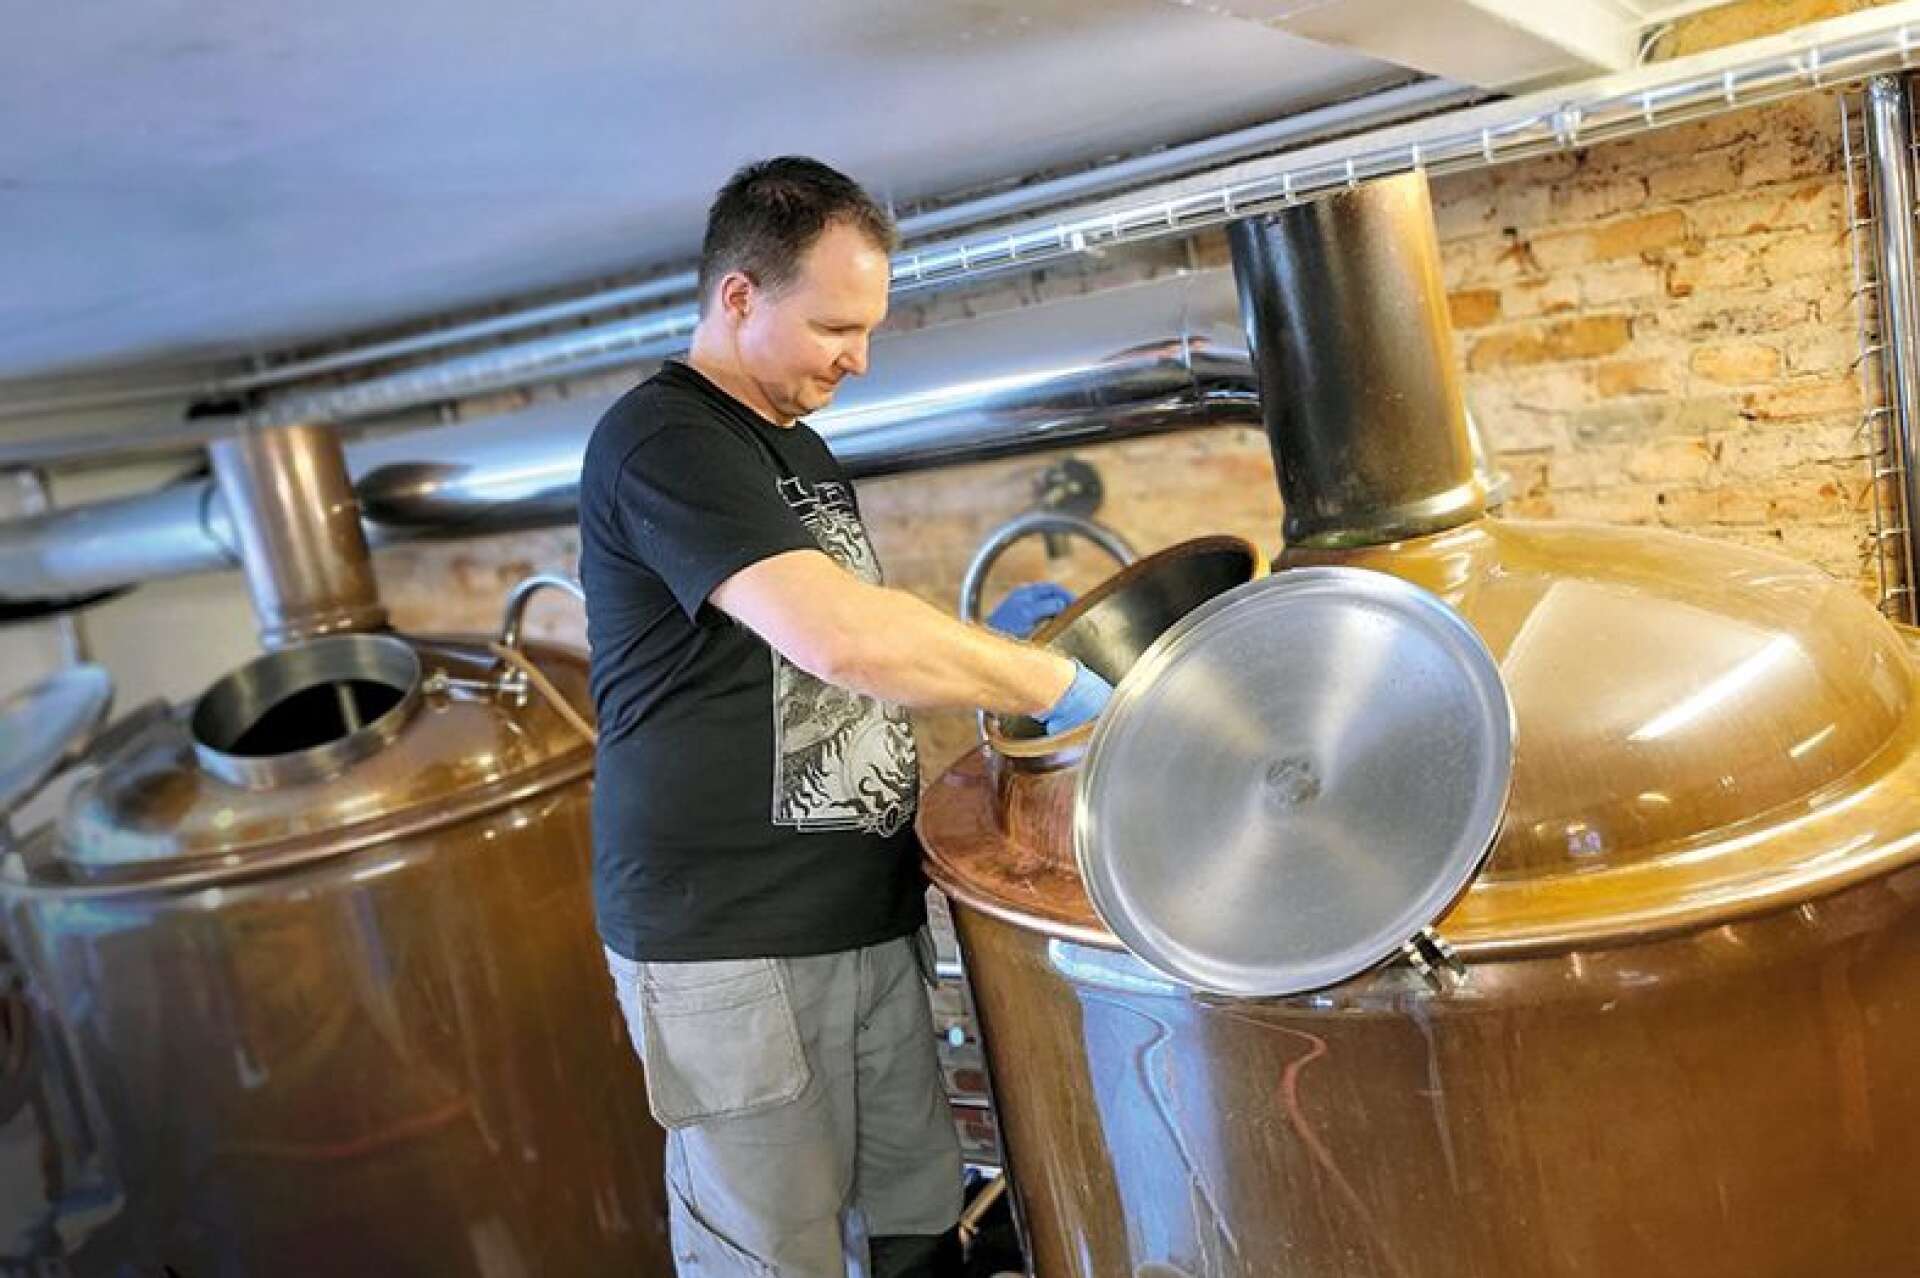 HANTVERK. Hantverksöl innebär en hel del manuellt arbete – långt från större, industrialiserade bryggerier. Då och då kilar Niklas Gustafsson iväg för att övervaka processen.